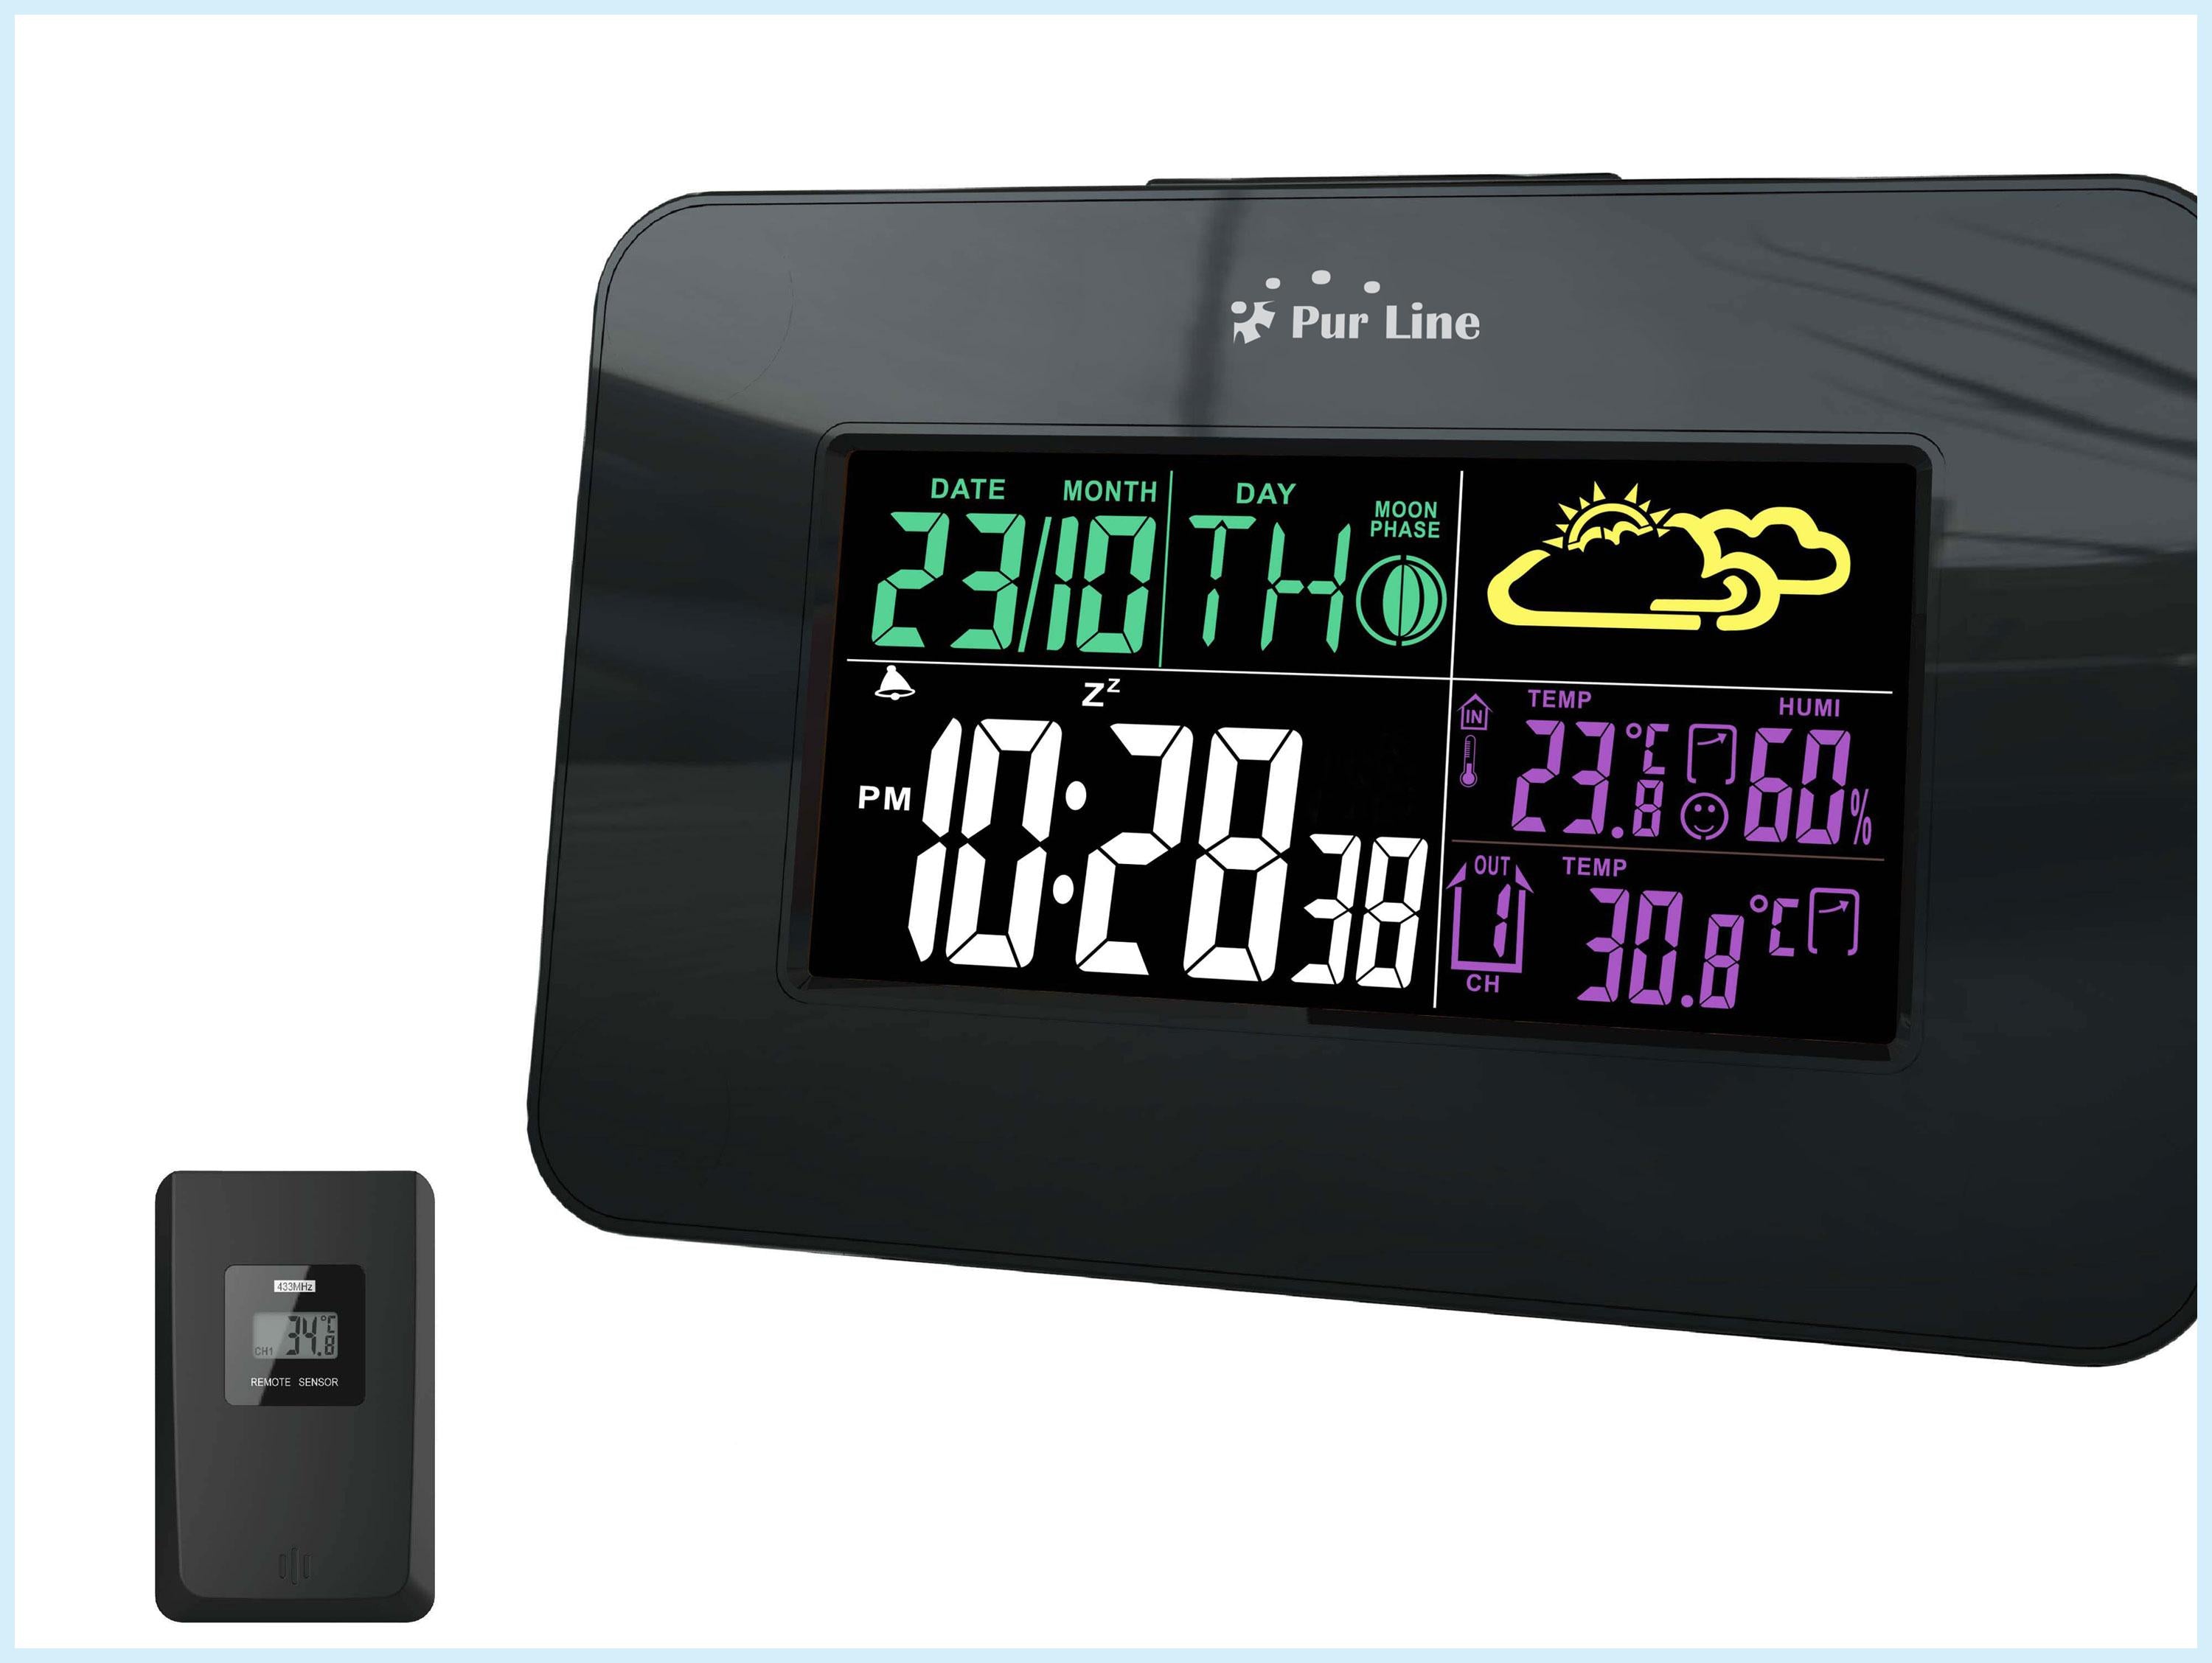 Thermomètre de voiture à l'intérieur extérieur LCD compteur de température  à affichage numérique avec câble de 1,5 m, thermomètre pour voiture